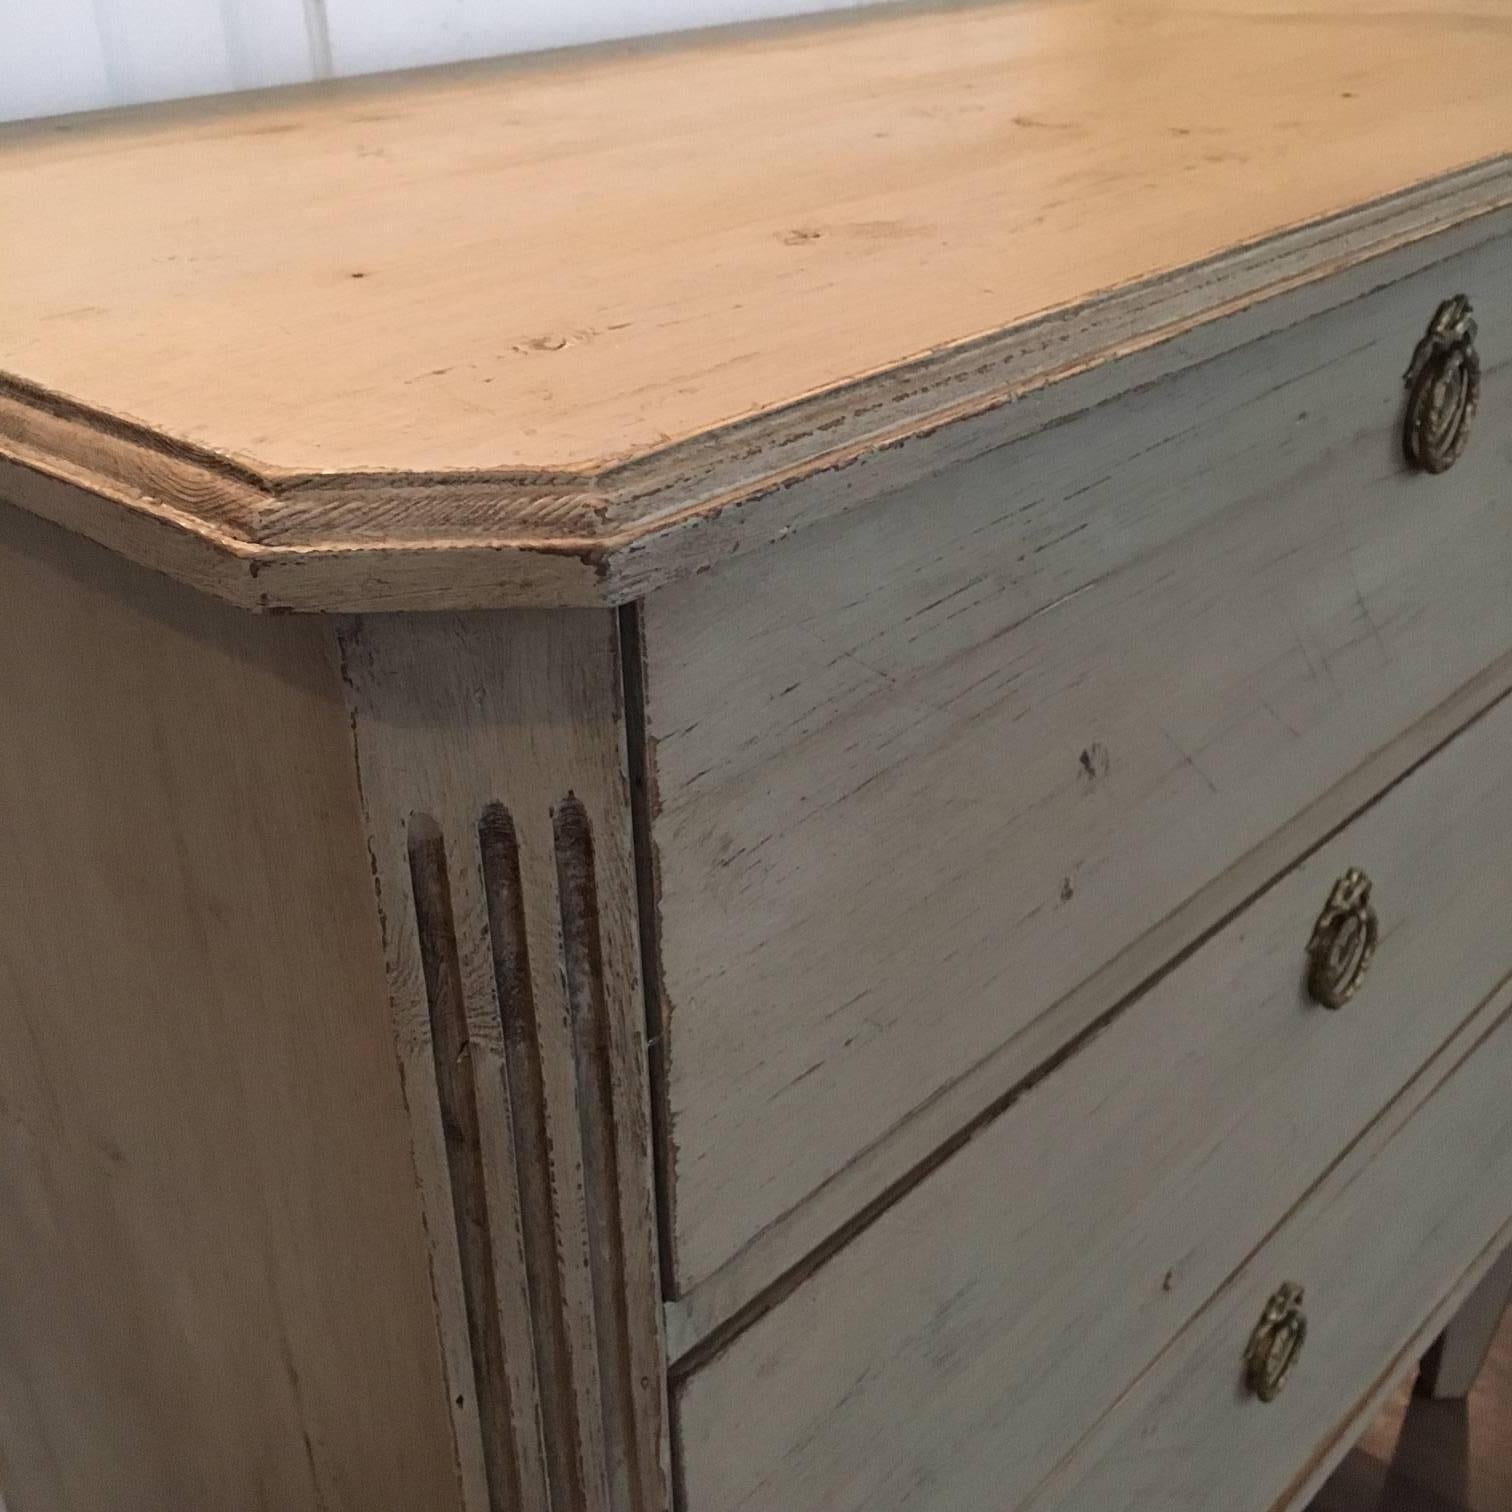 19th century Swedish Gustavian style chest of drawers, gray repainting, three drawers.